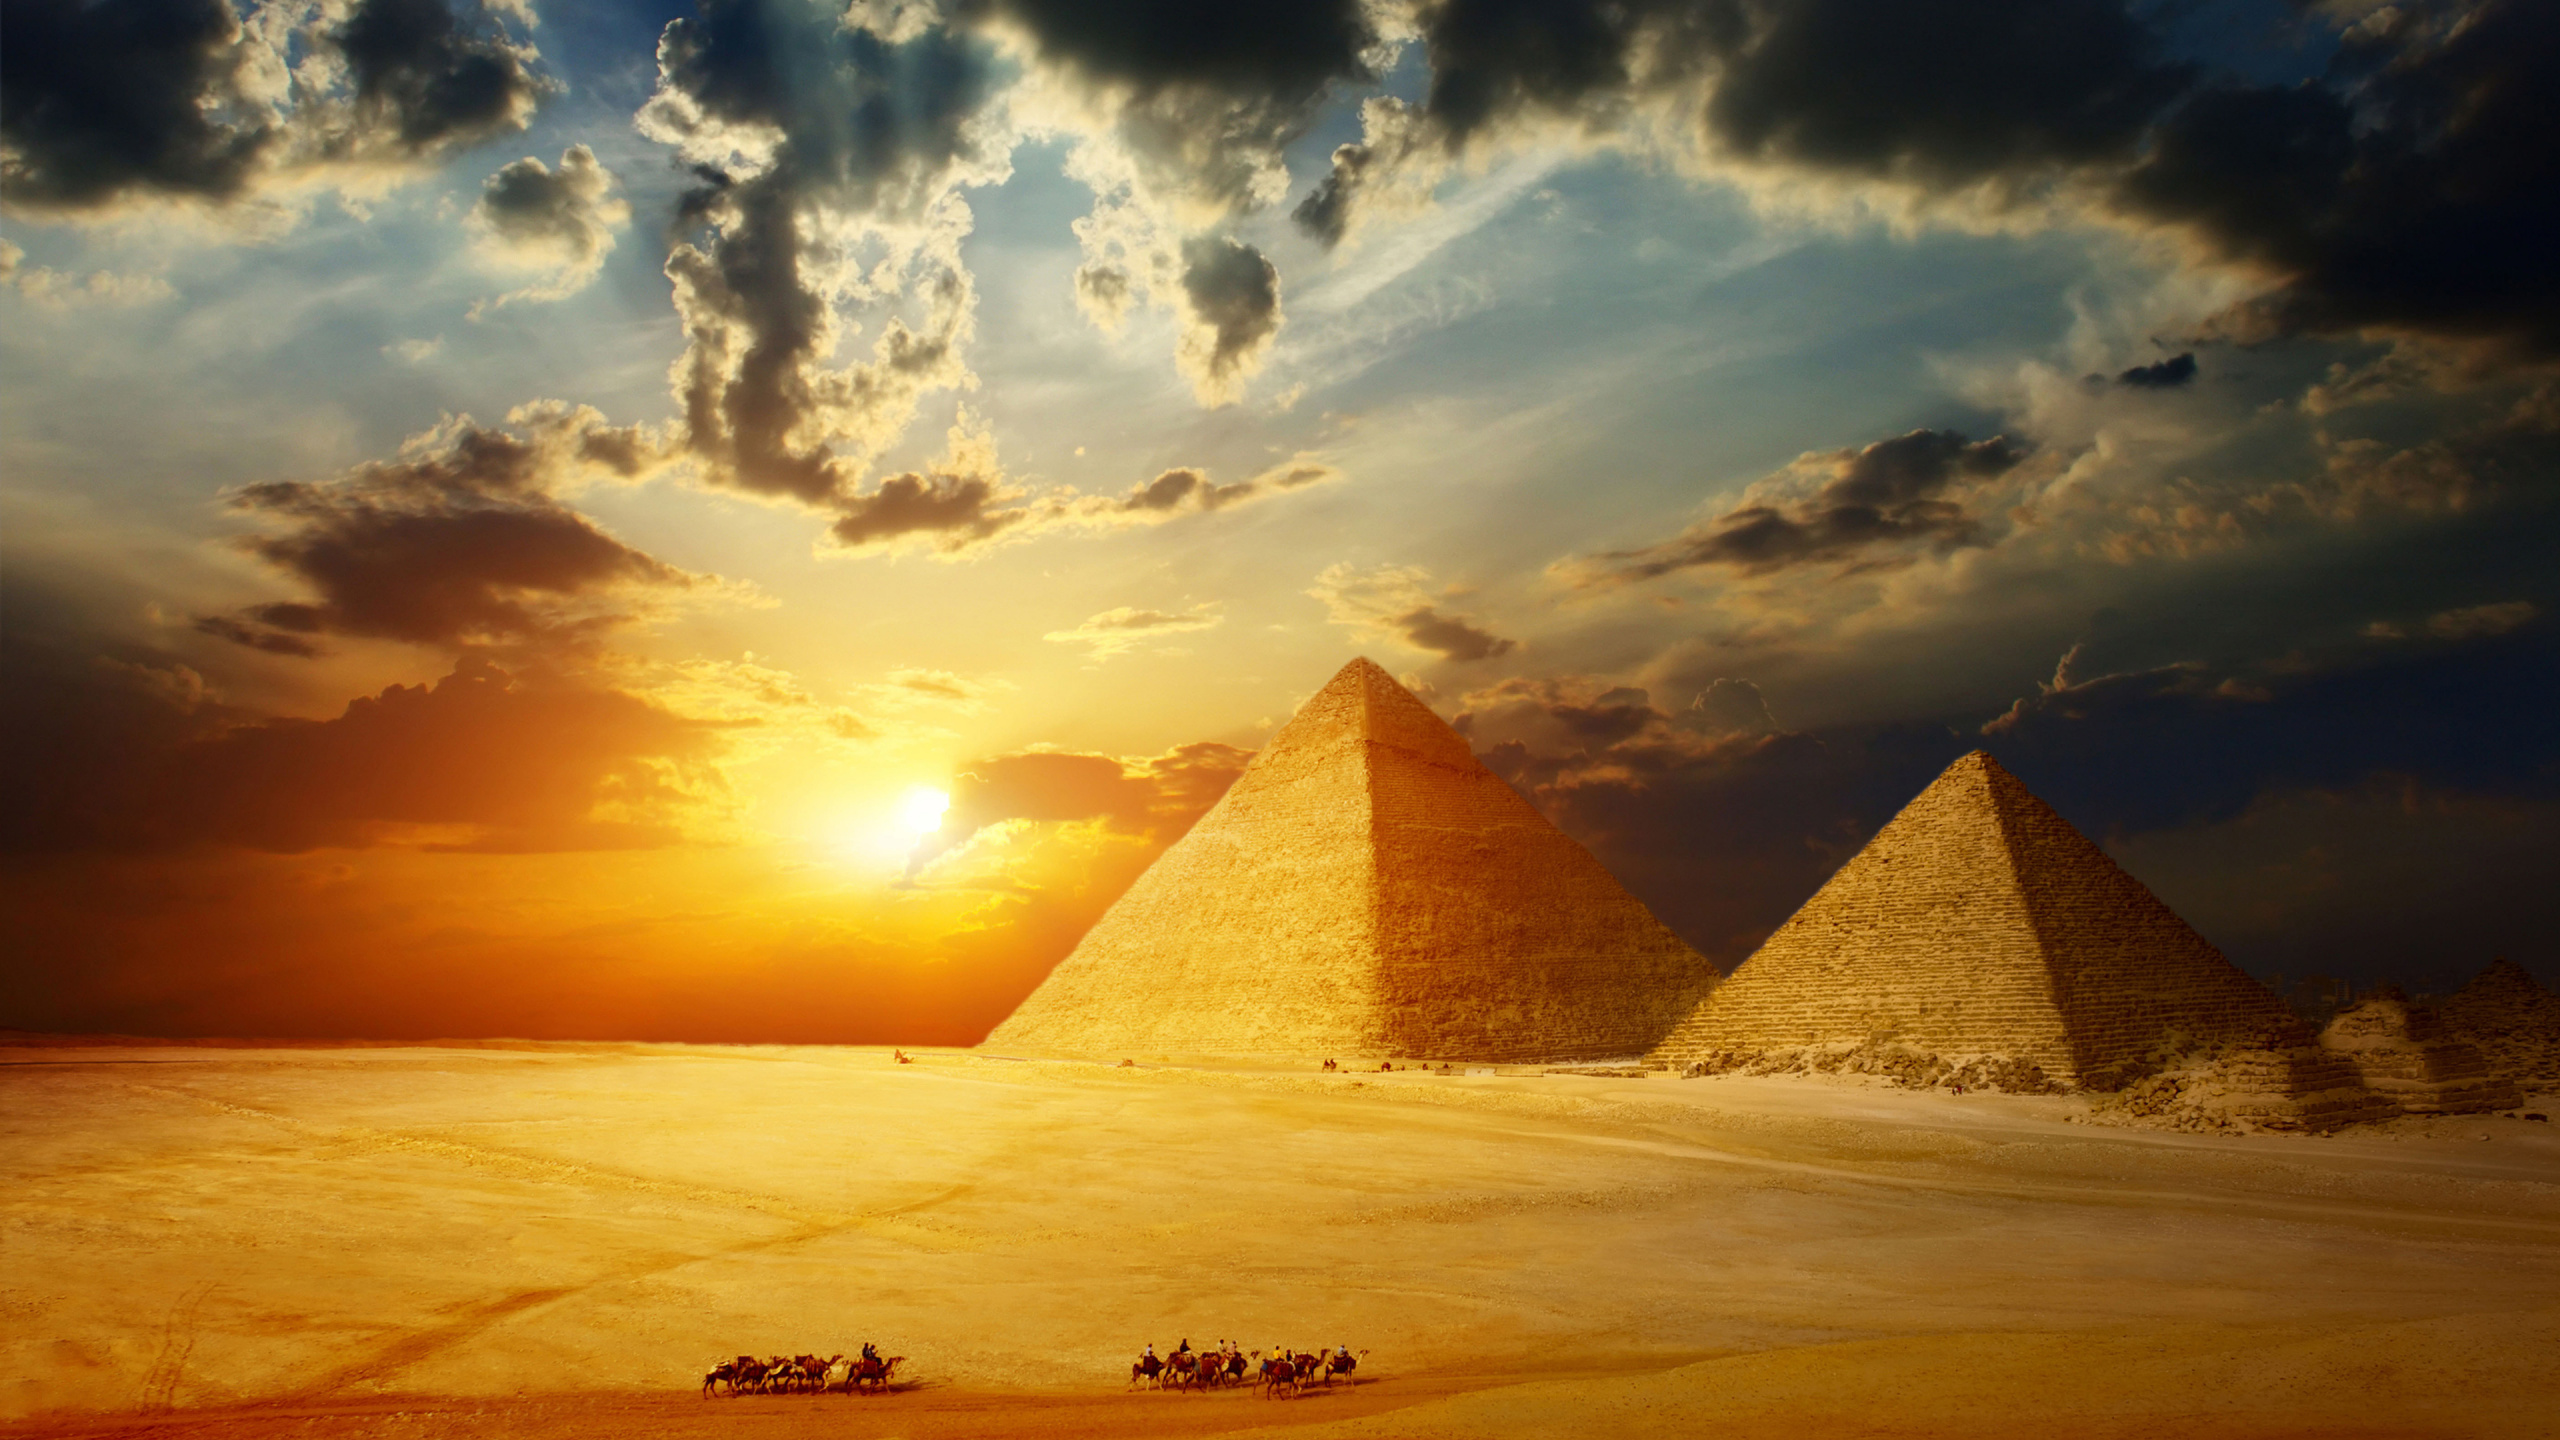 开罗, 埃及金字塔, 金字塔, 里程碑, 纪念碑 壁纸 2560x1440 允许